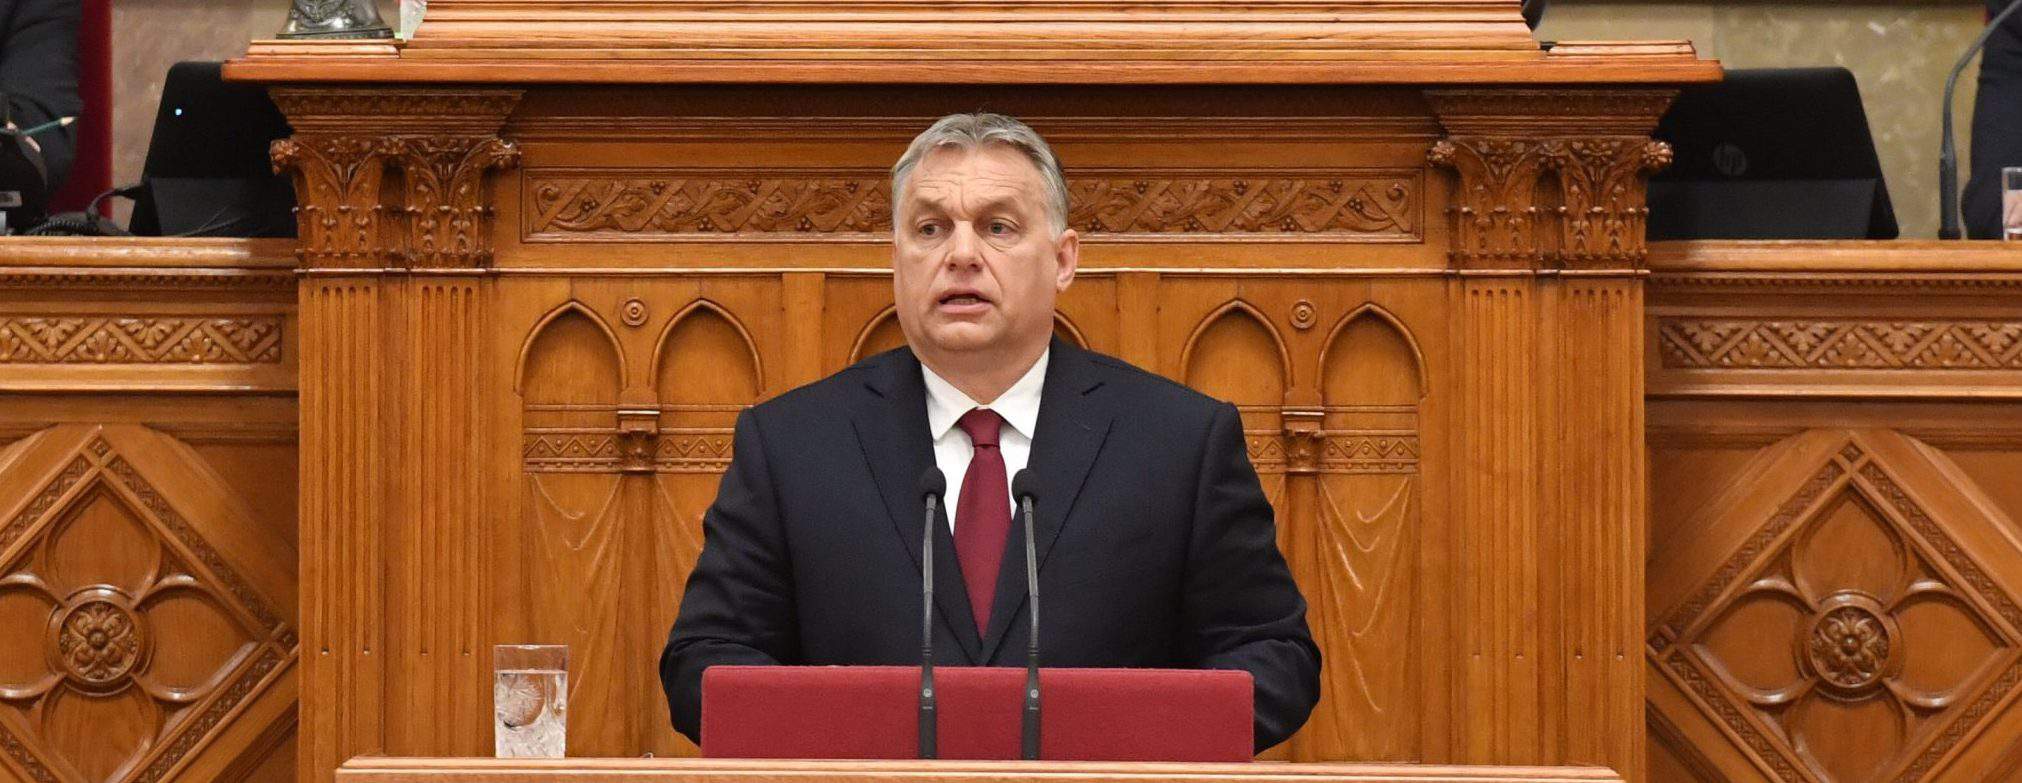 PM Orbán Hungría